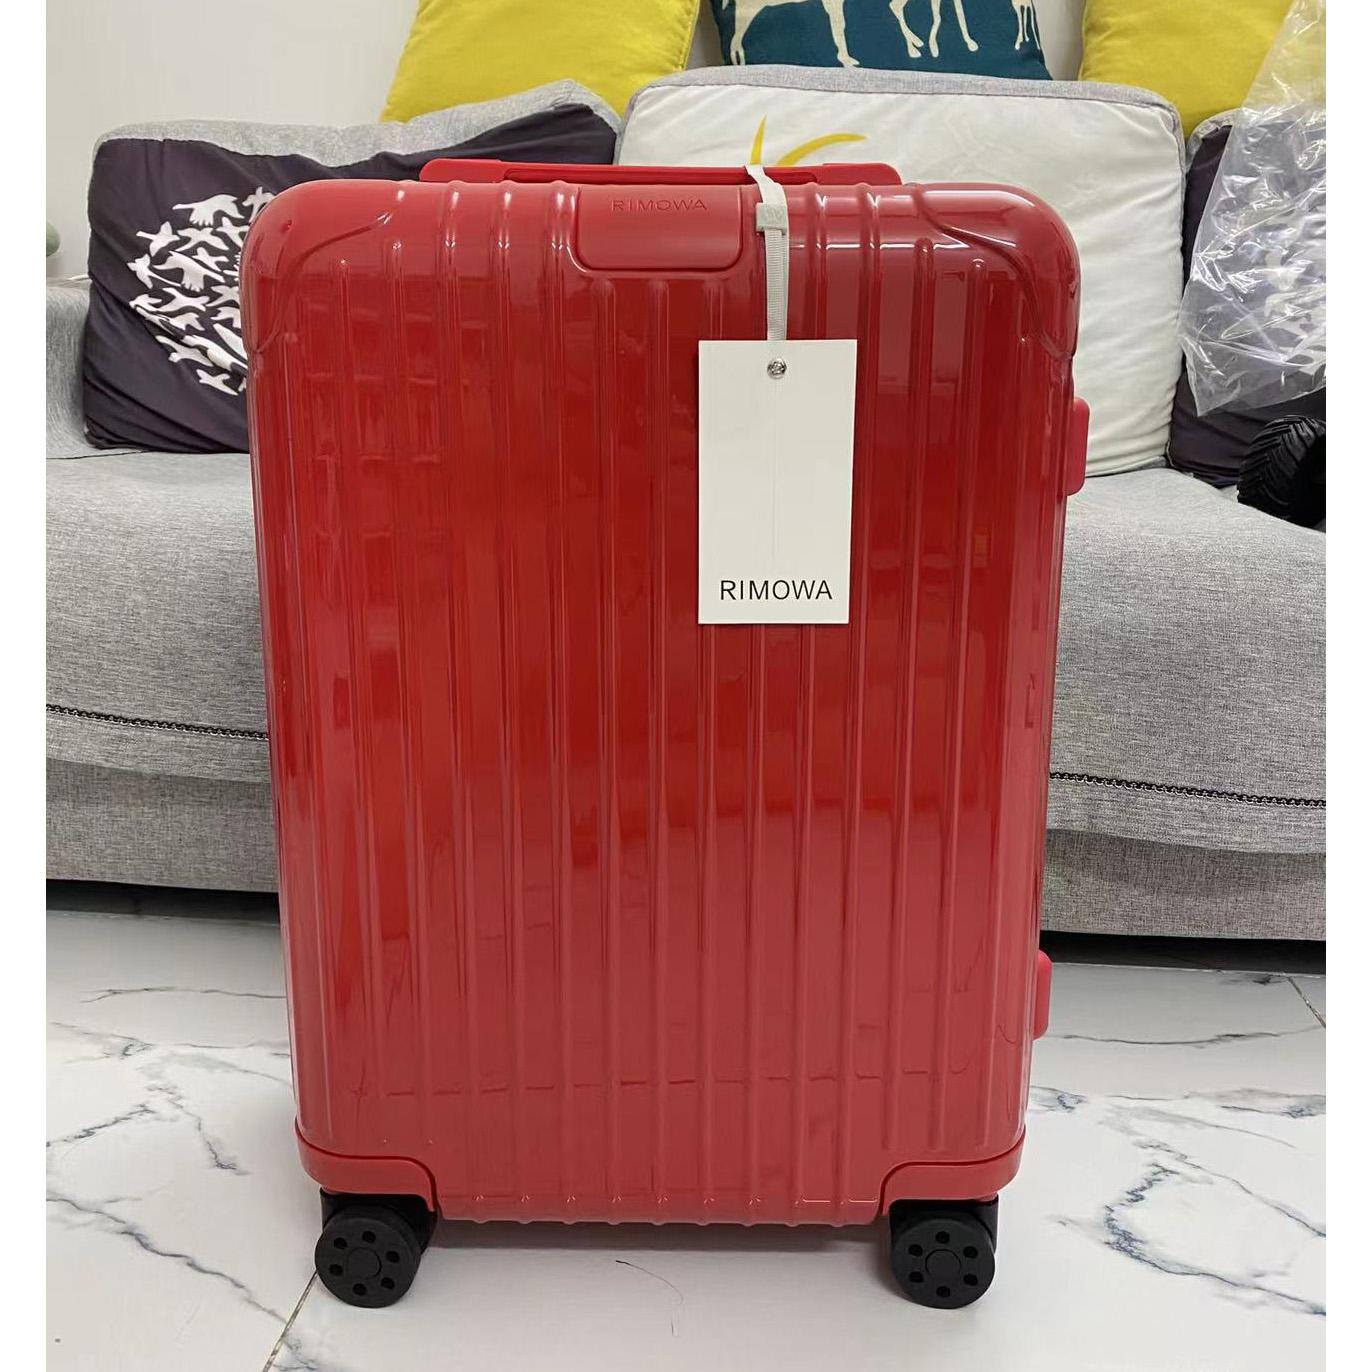 Rimowa Luggage - everydesigner